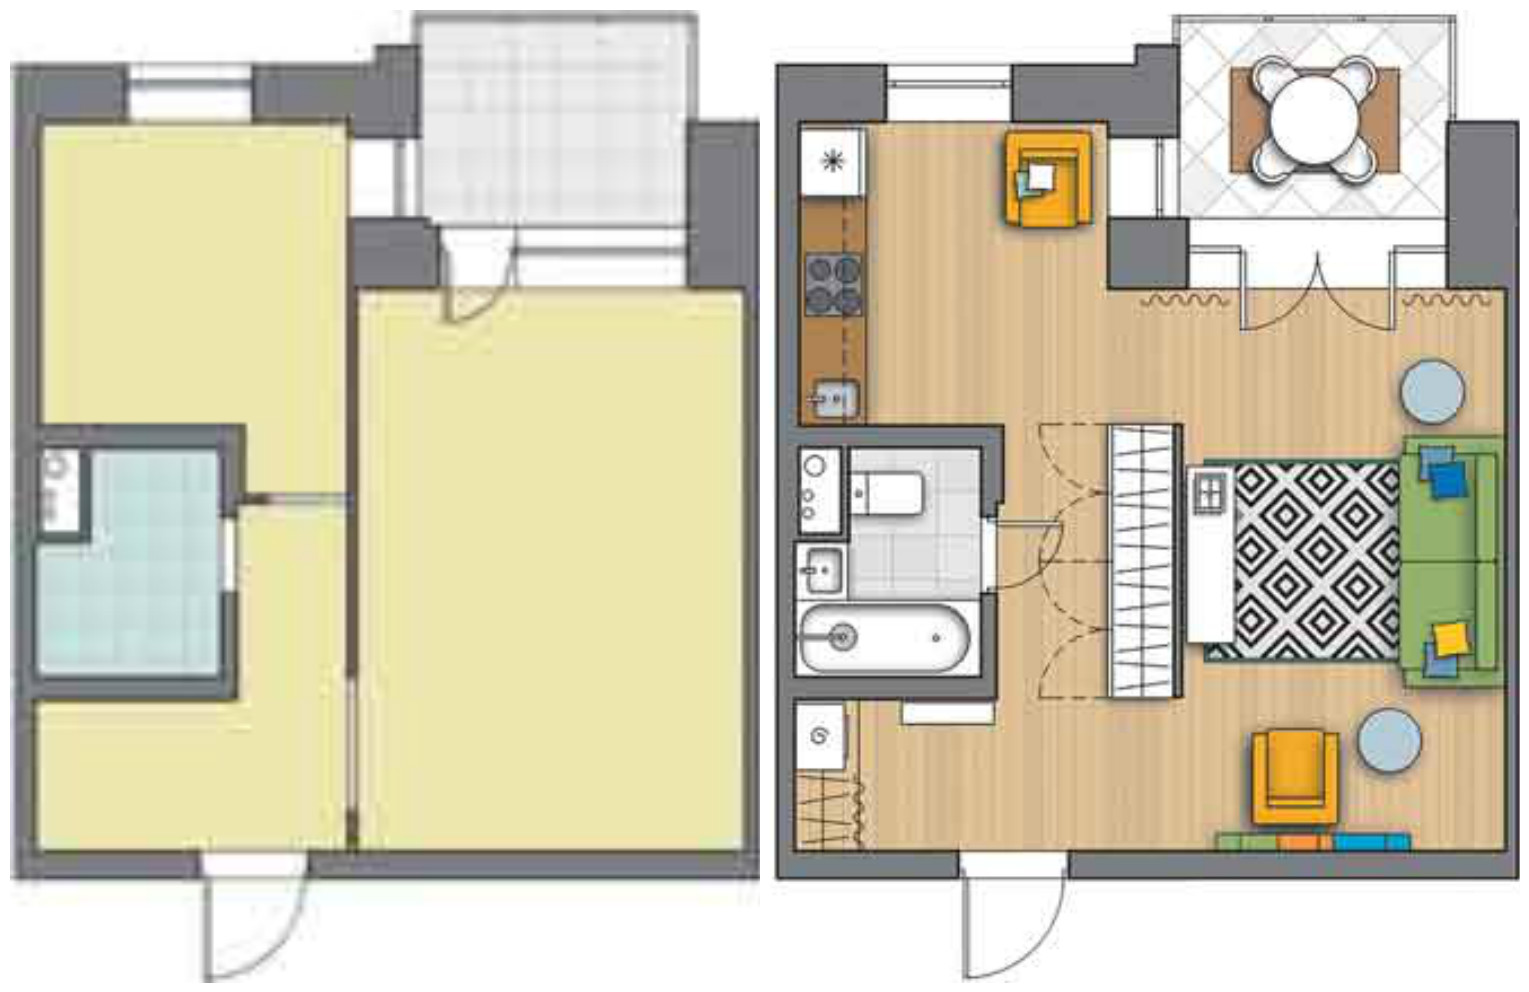 Дизайн маленьких квартир: 8 оригинальных идей